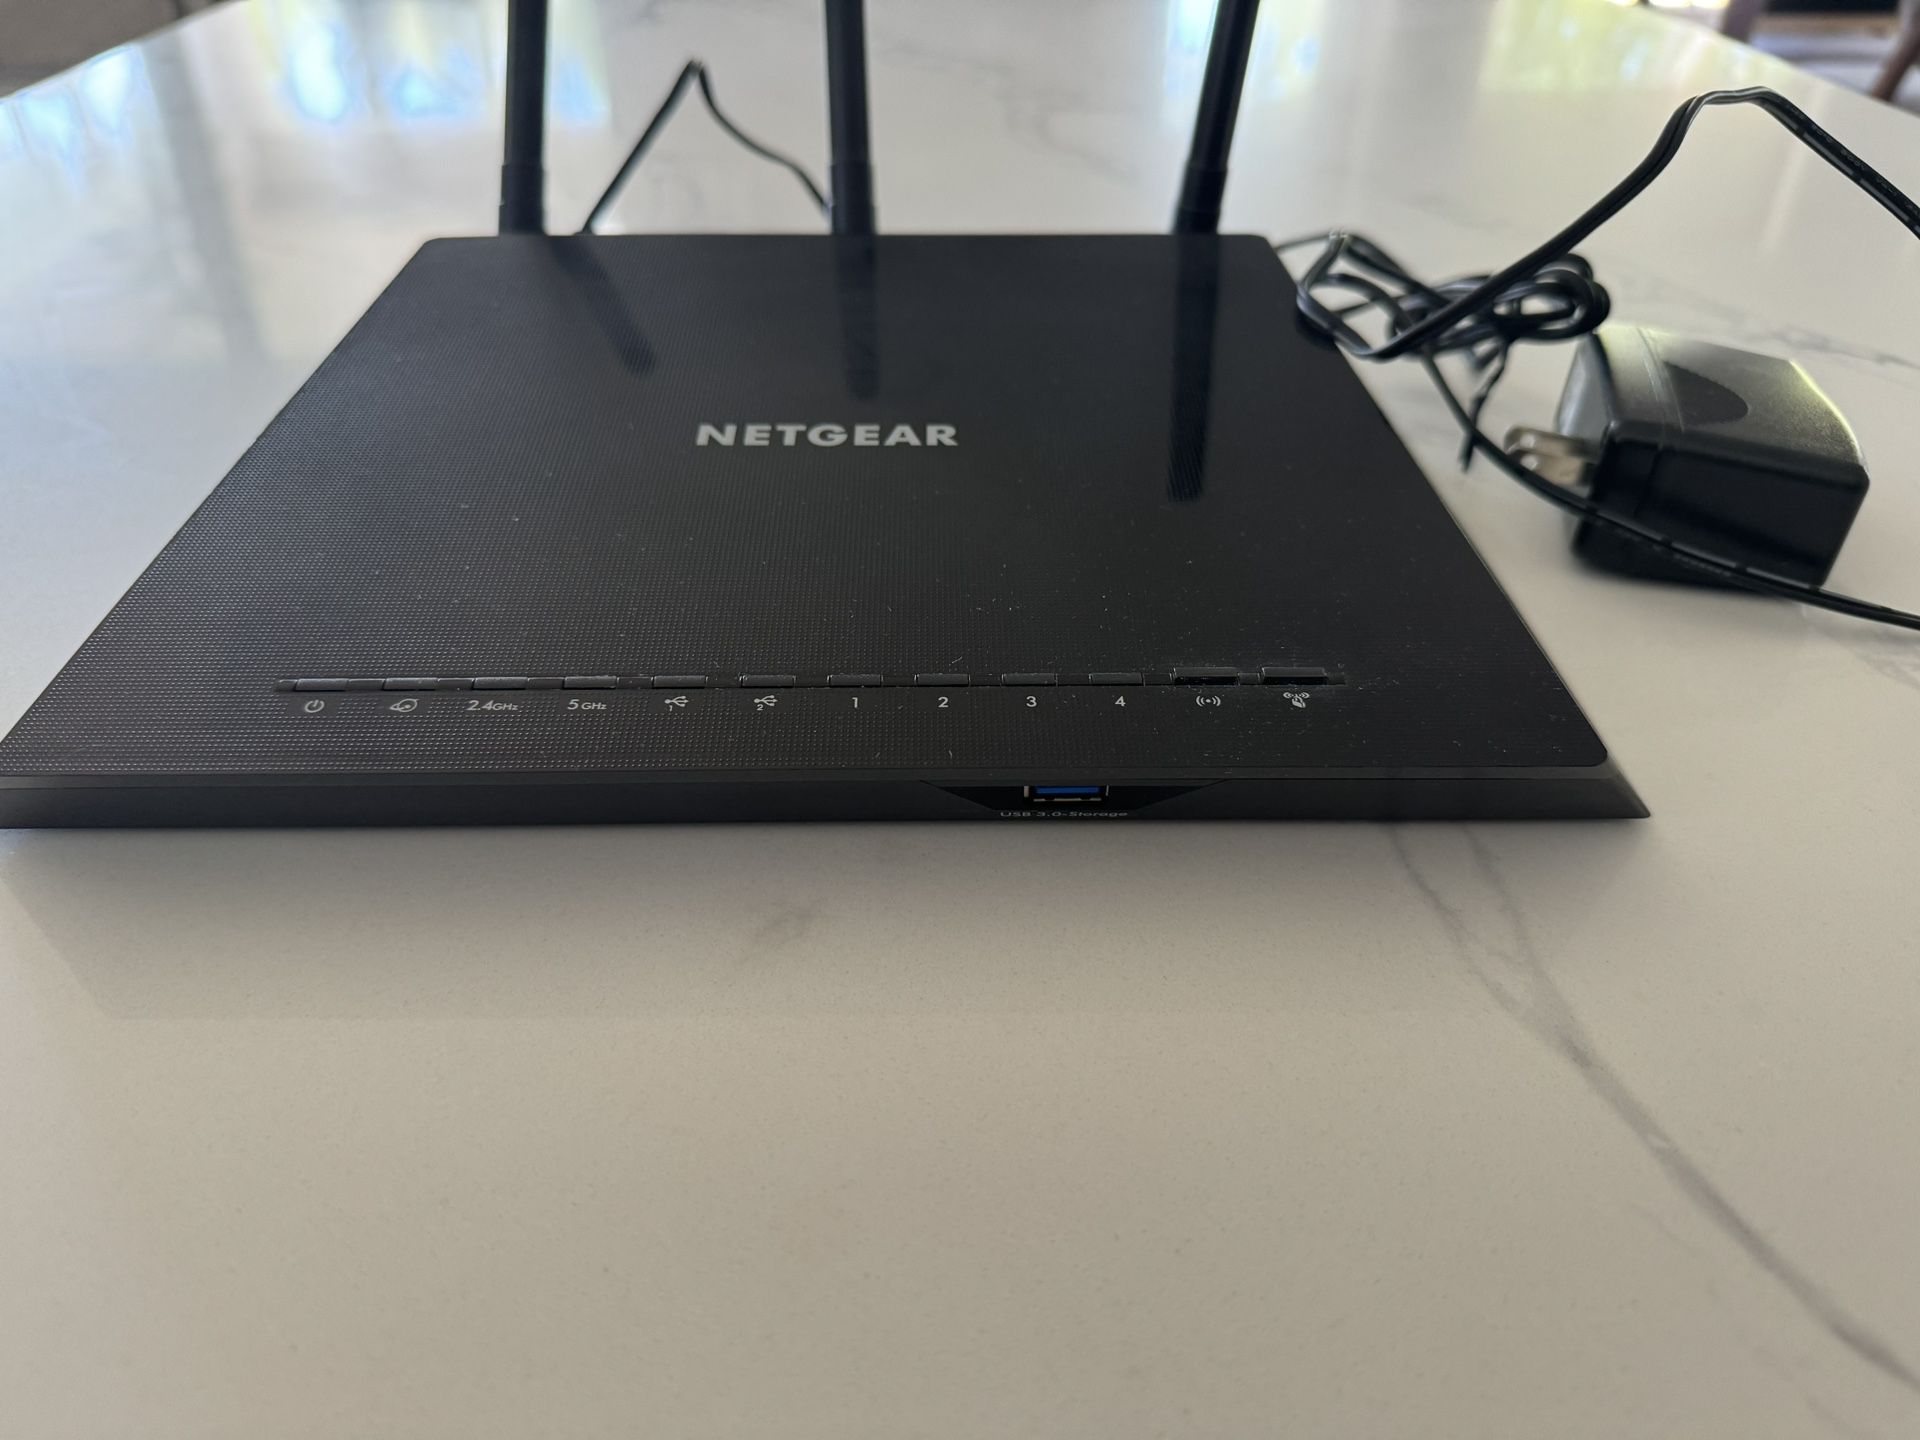  NETGEAR WiFi Router 